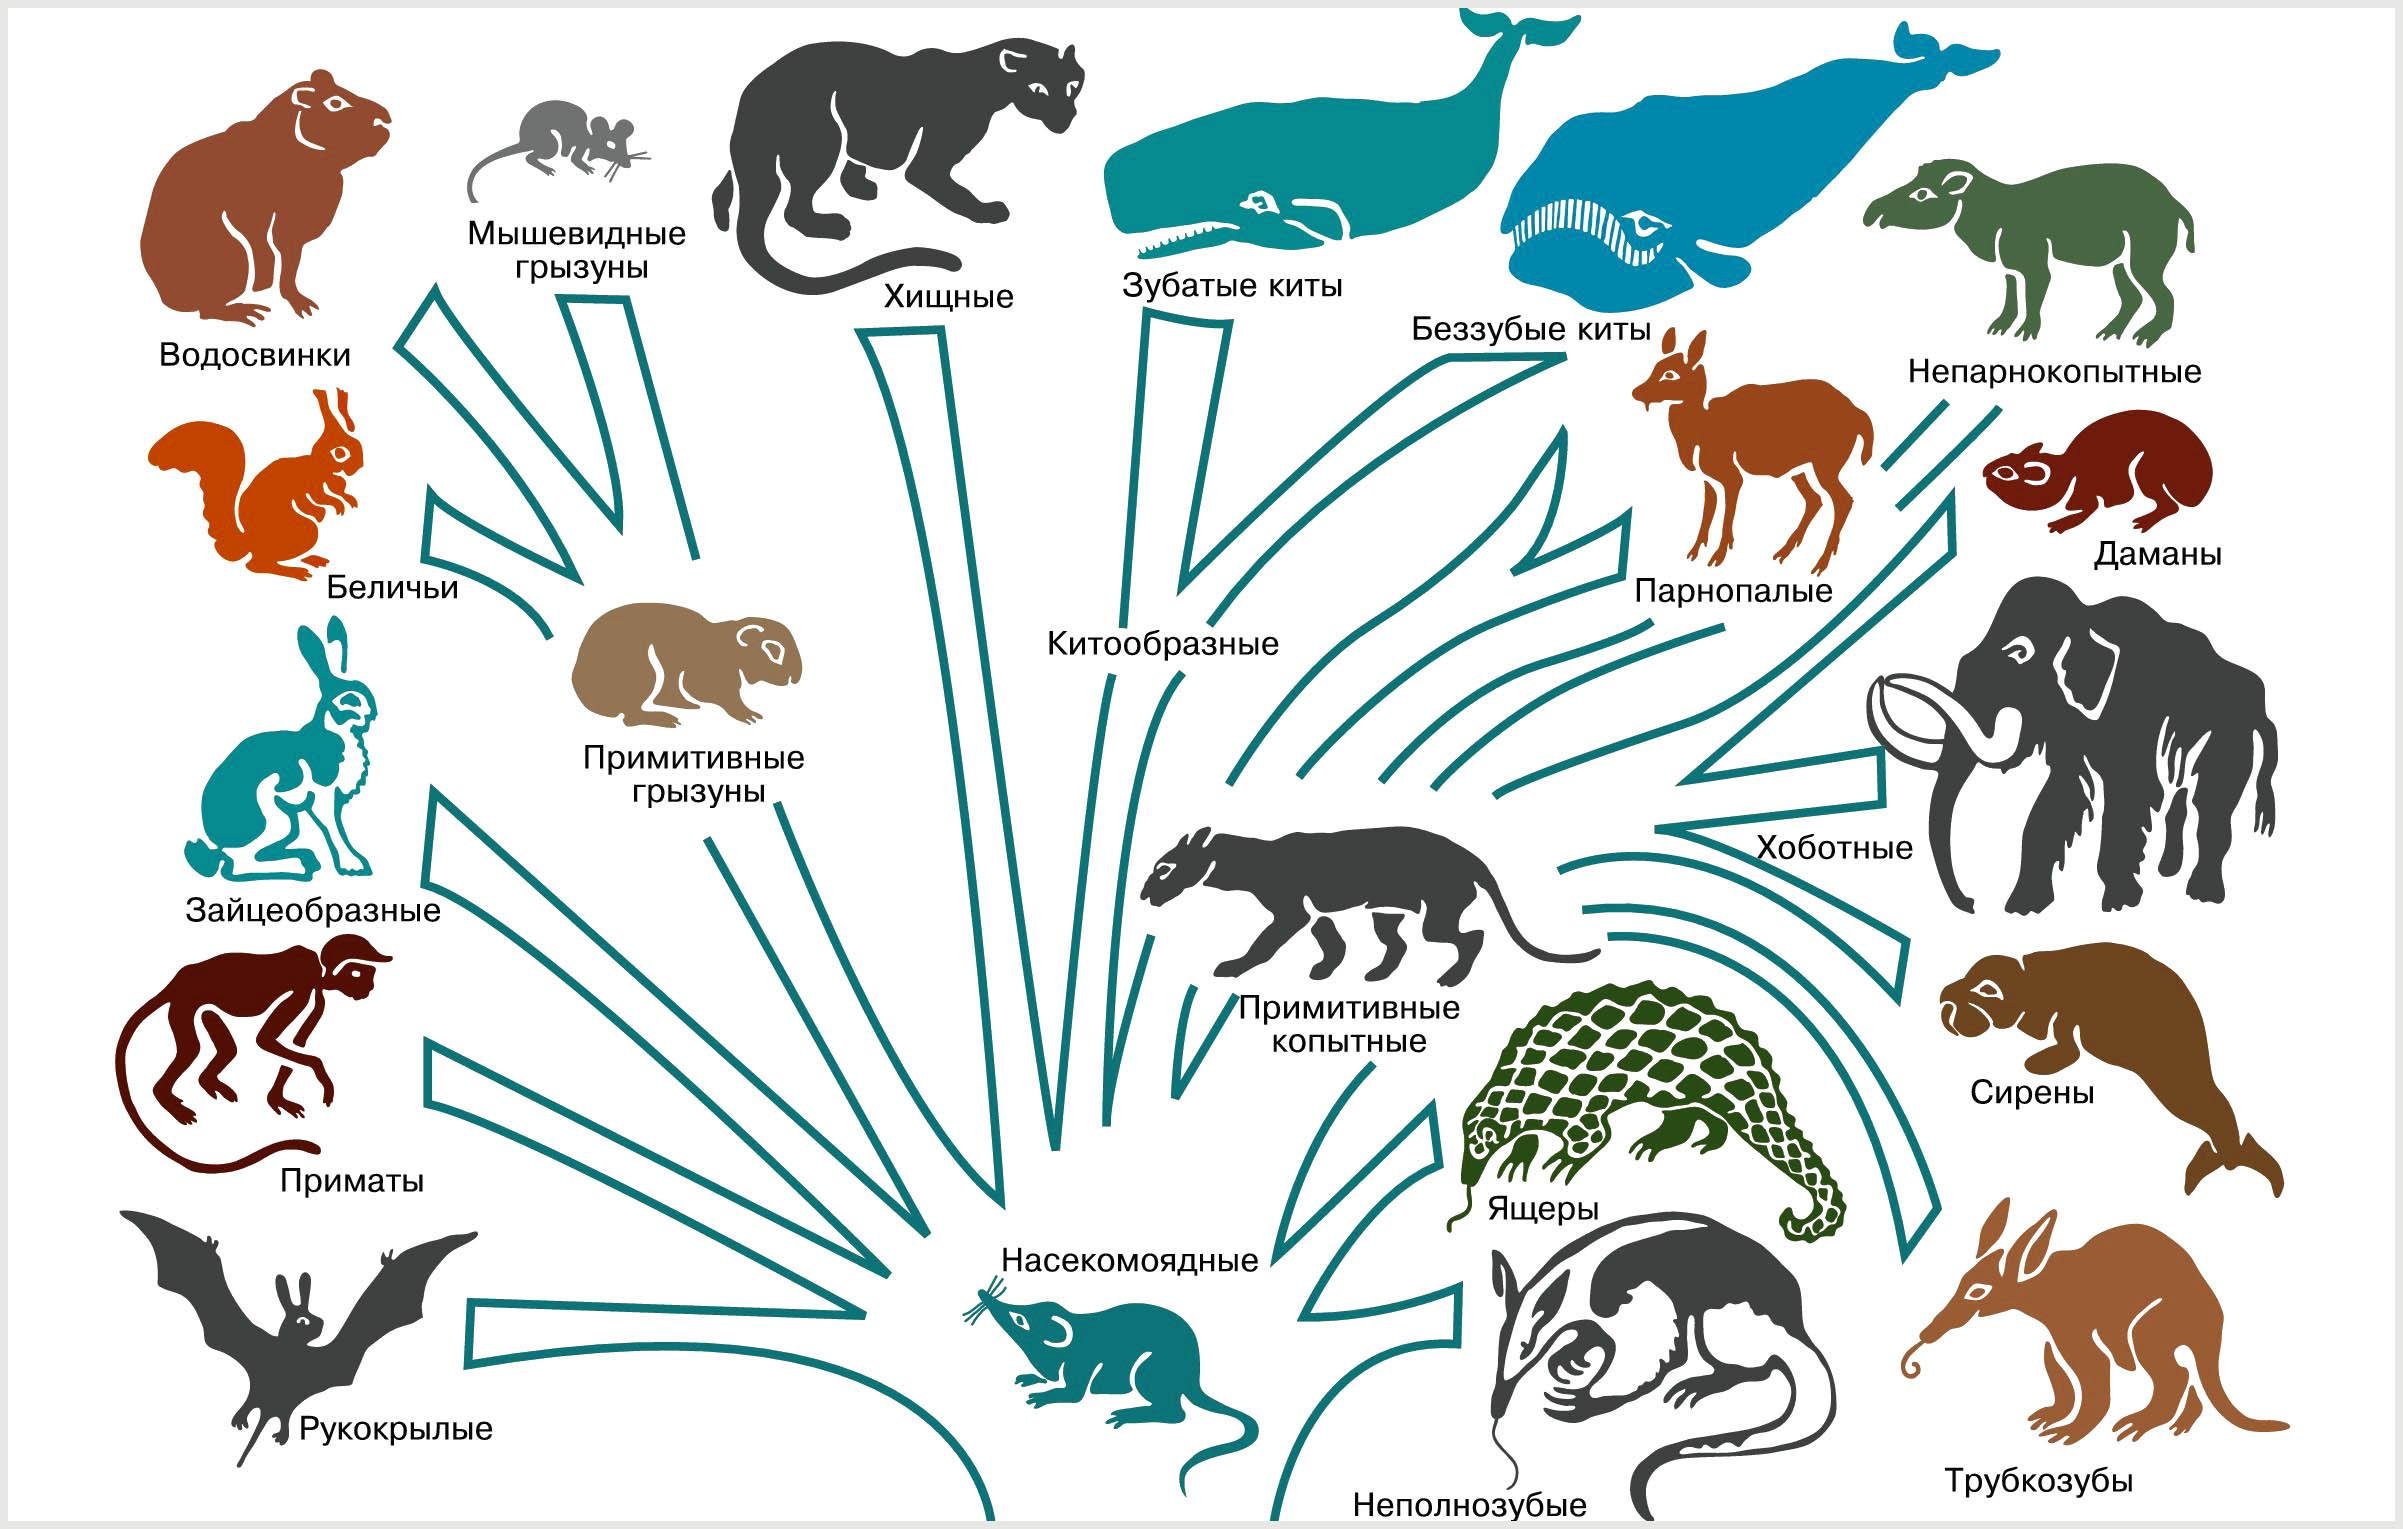 Появления групп животных на земле. Филогенетическое Древо млекопитающих. Филогенетическое Древо хищных млекопитающих. Филогенетическое Древо рукокрылых.